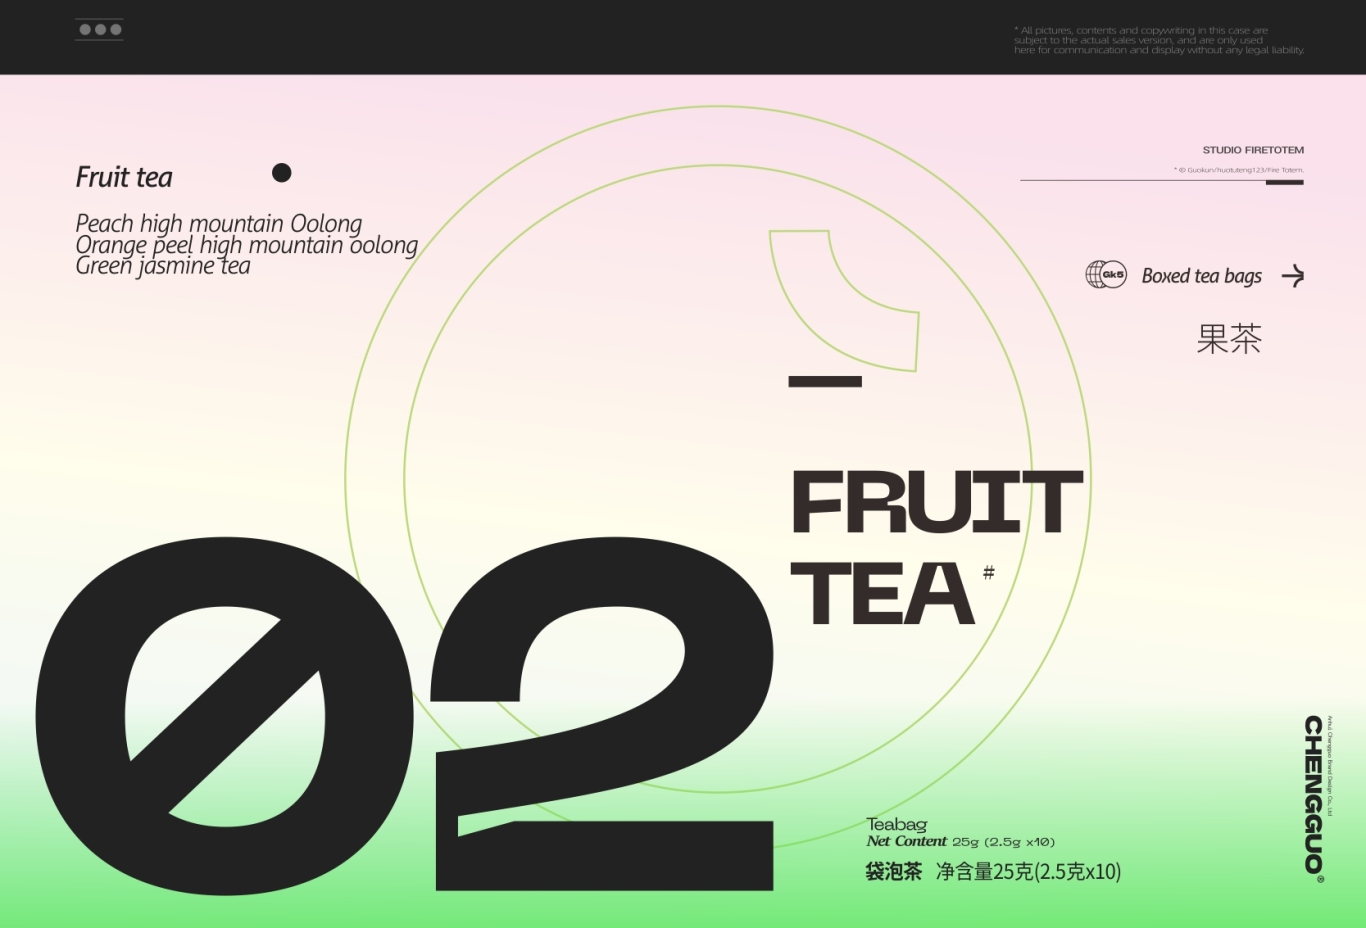 呈果(合肥)品牌 X 果遇茶2023袋泡茶系列包装设计图28